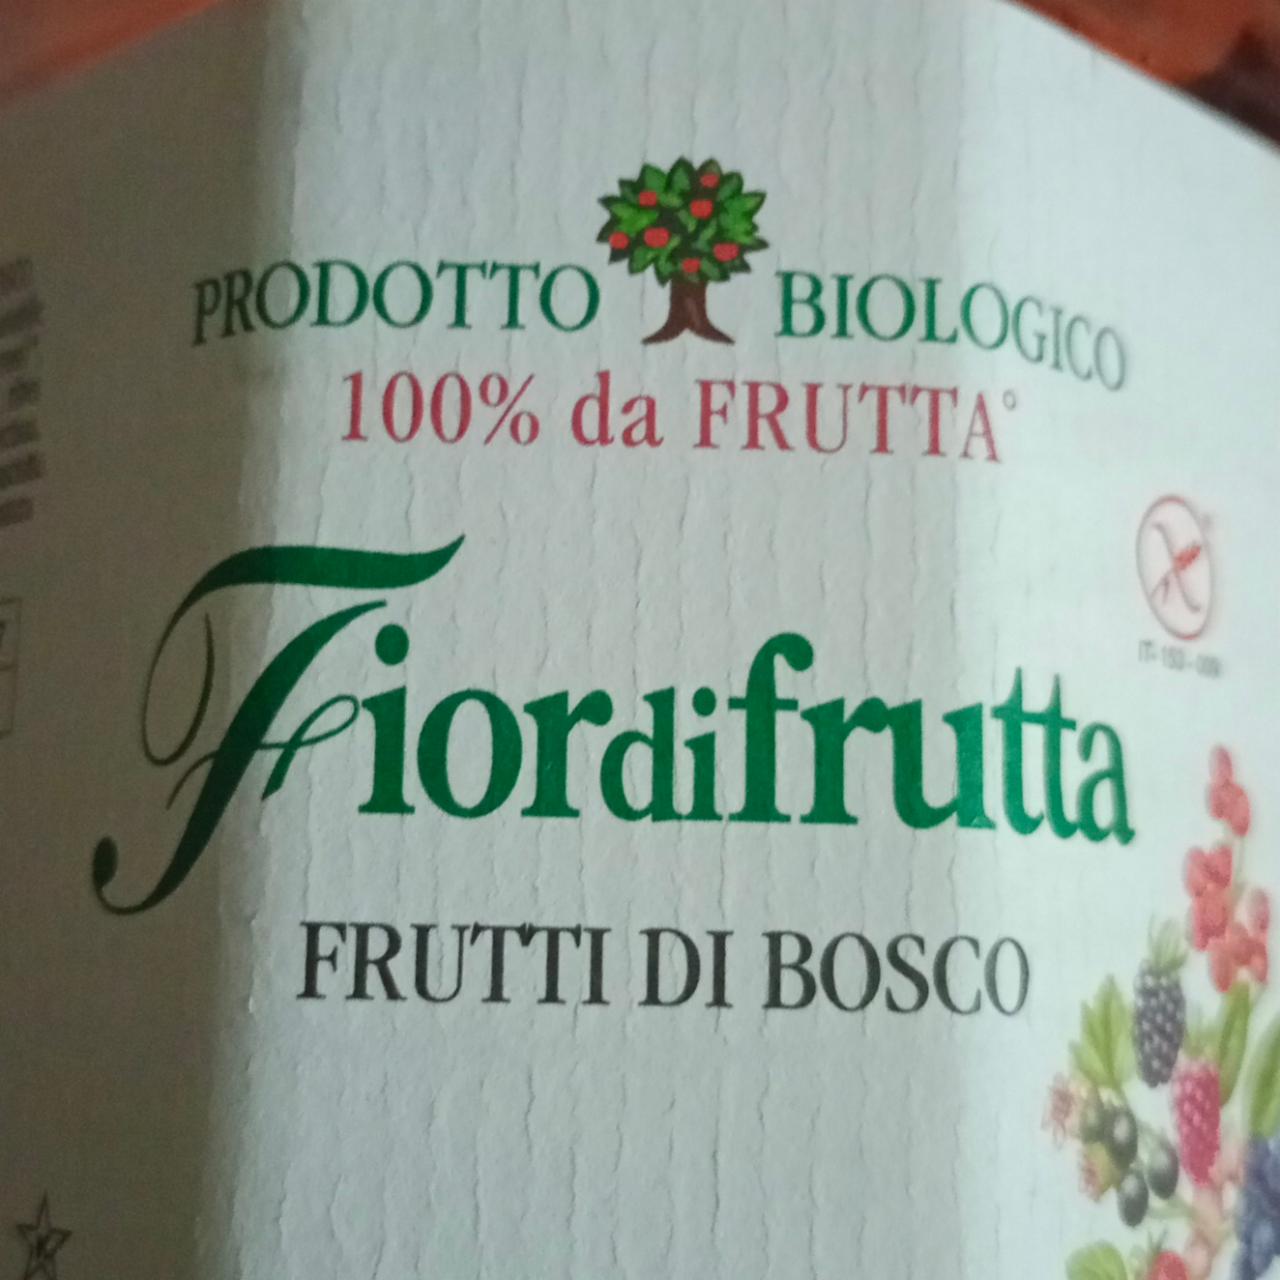 Фото - джем без сахара лесные ягоды Fiordifrutta